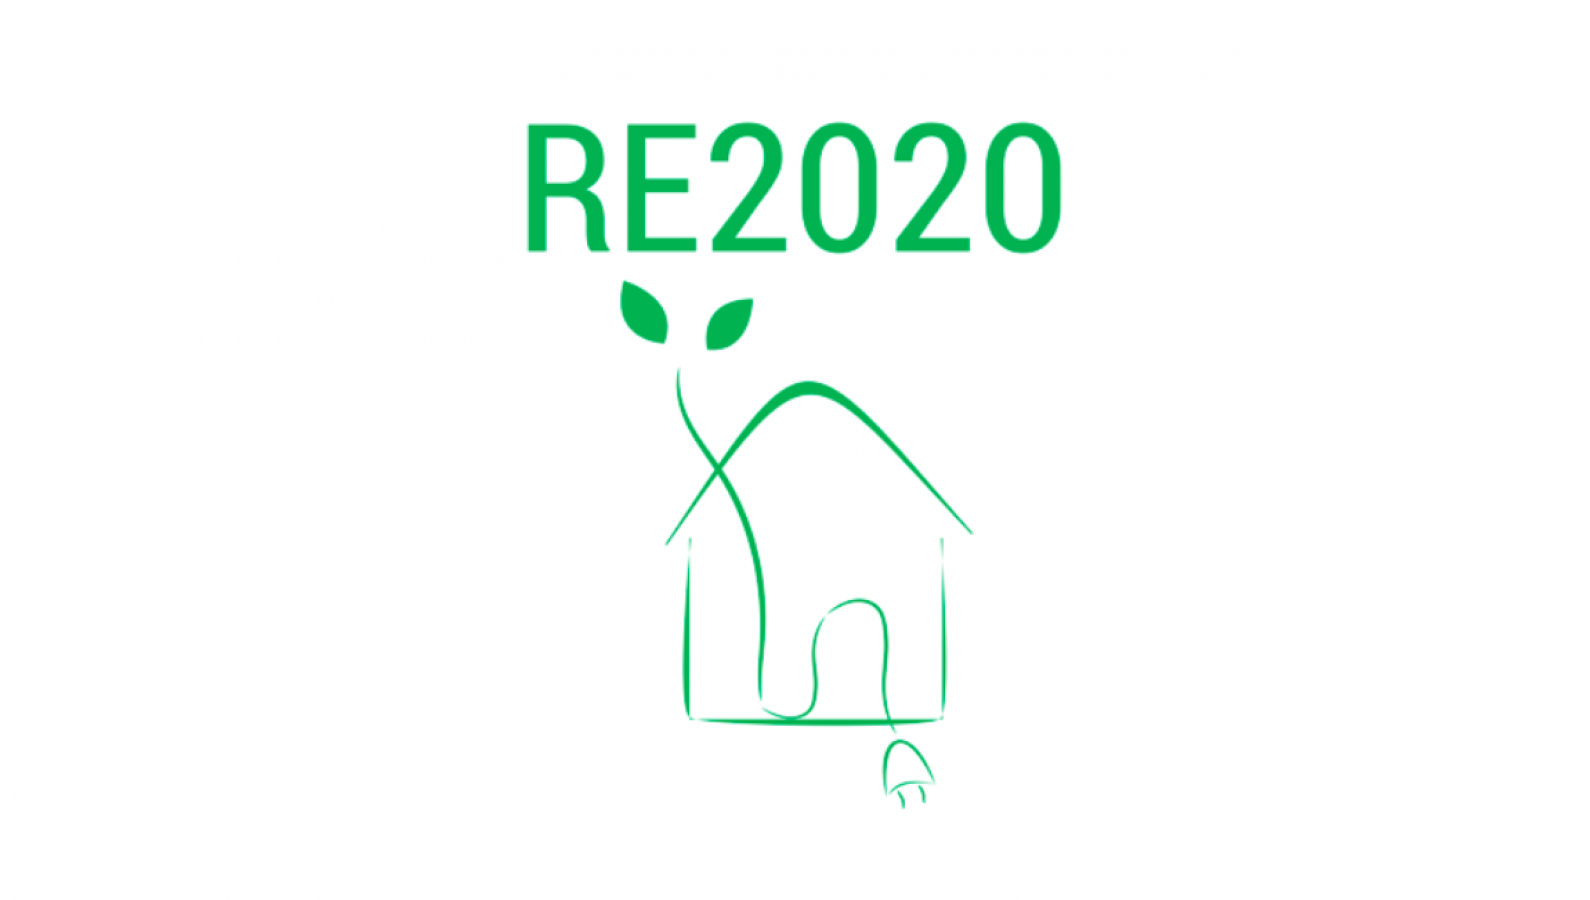 La RE2020 repoussée au 1 er janvier 2022 